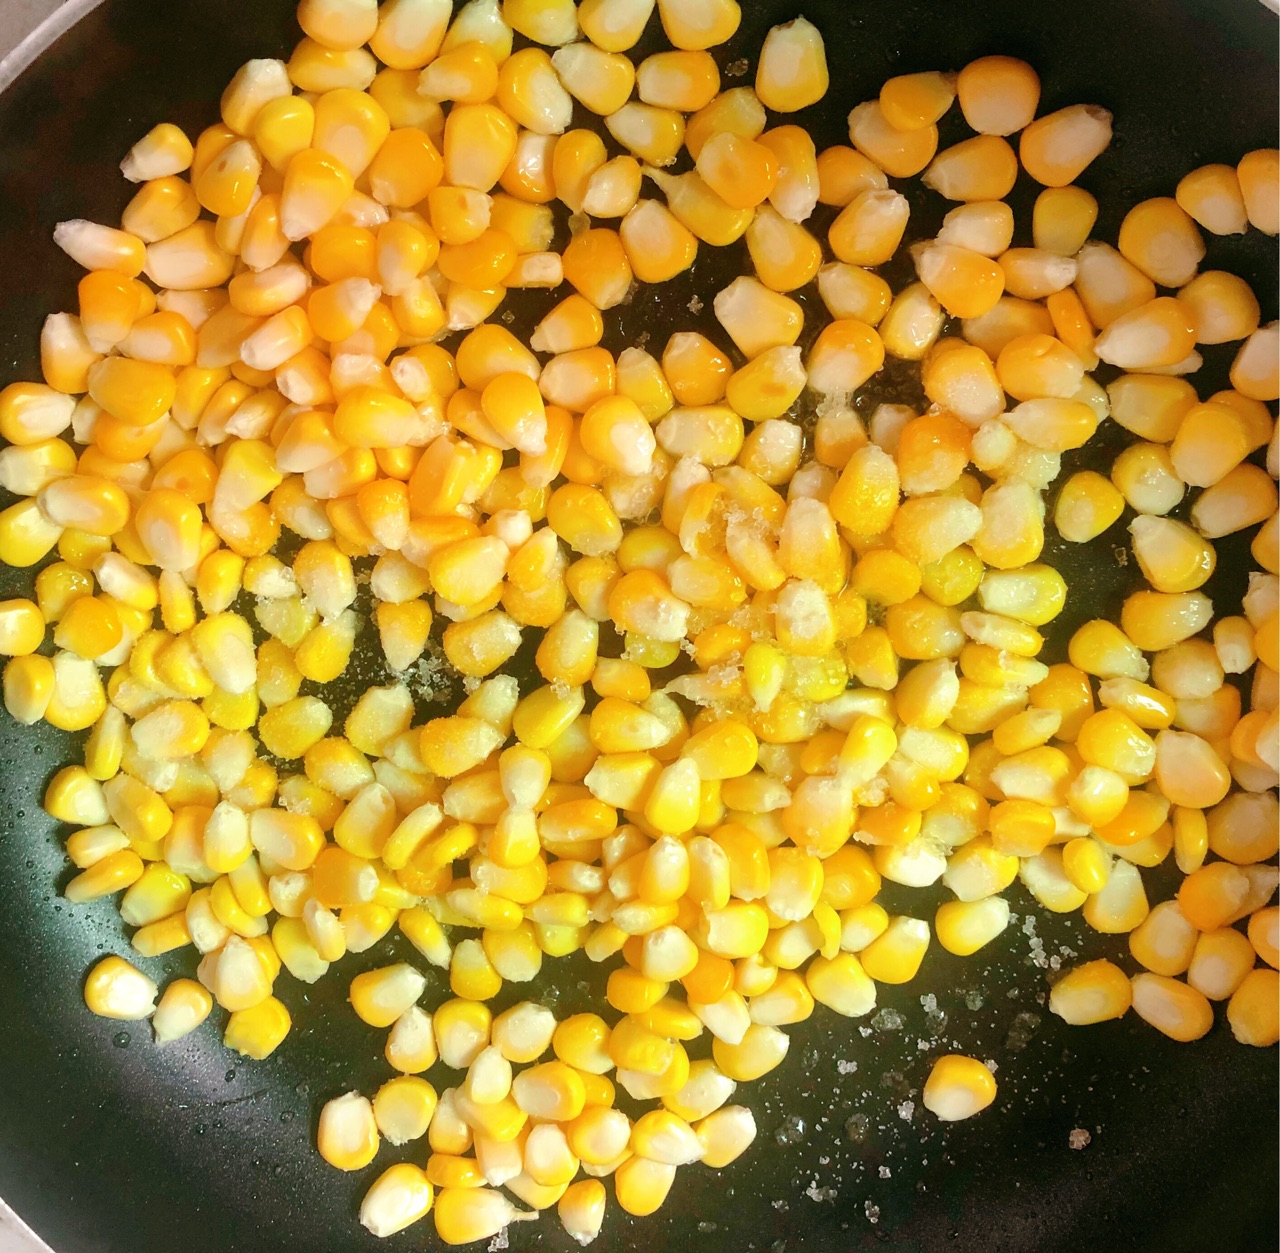 时蔬炒玉米粒,时蔬炒玉米粒的家常做法 - 美食杰时蔬炒玉米粒做法大全